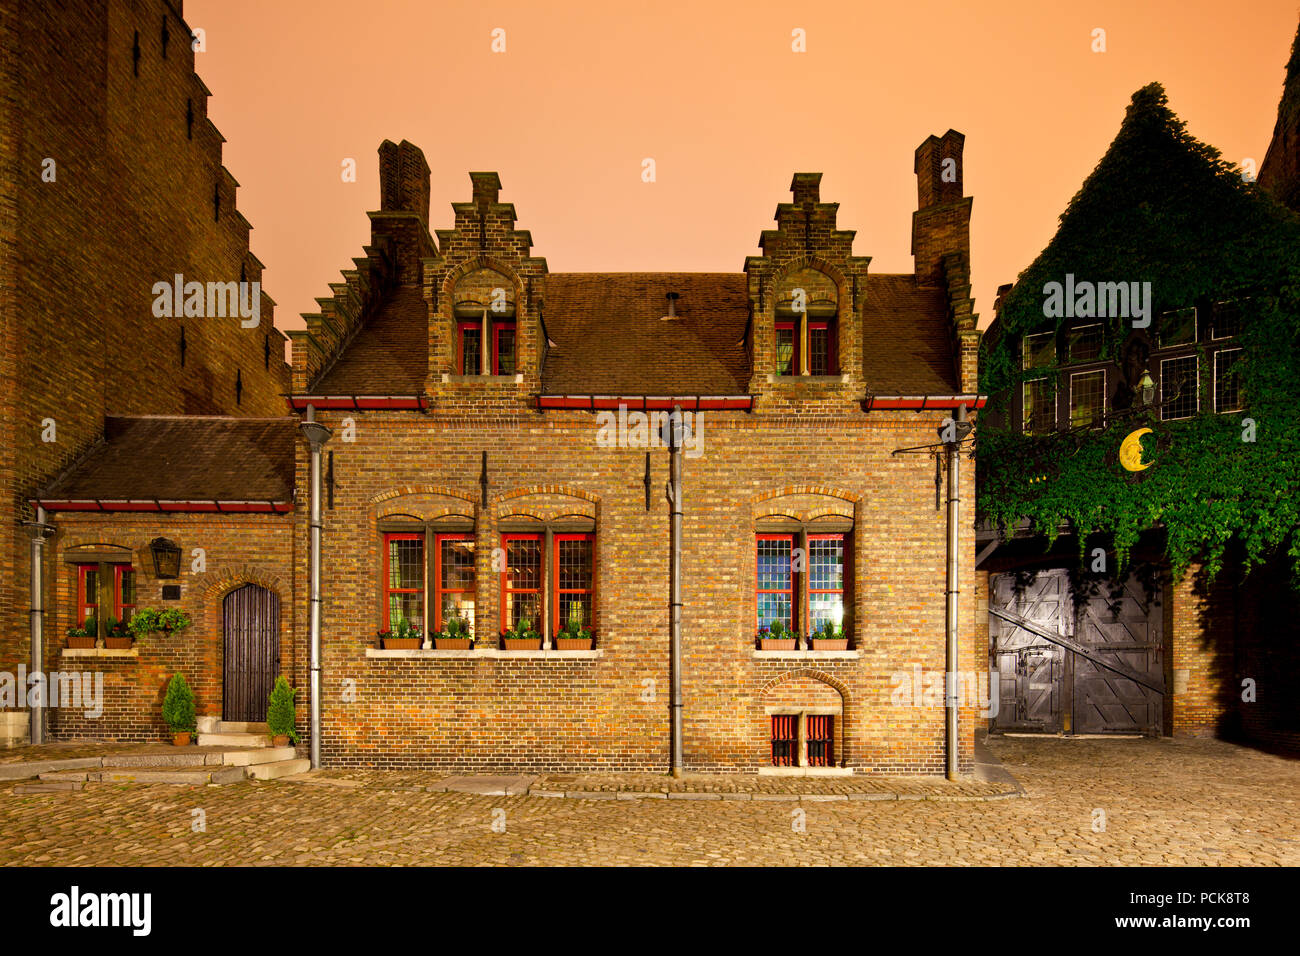 Une petite vieille maison en brique près du musée Gruuthuse à Bruges dans la nuit. Banque D'Images